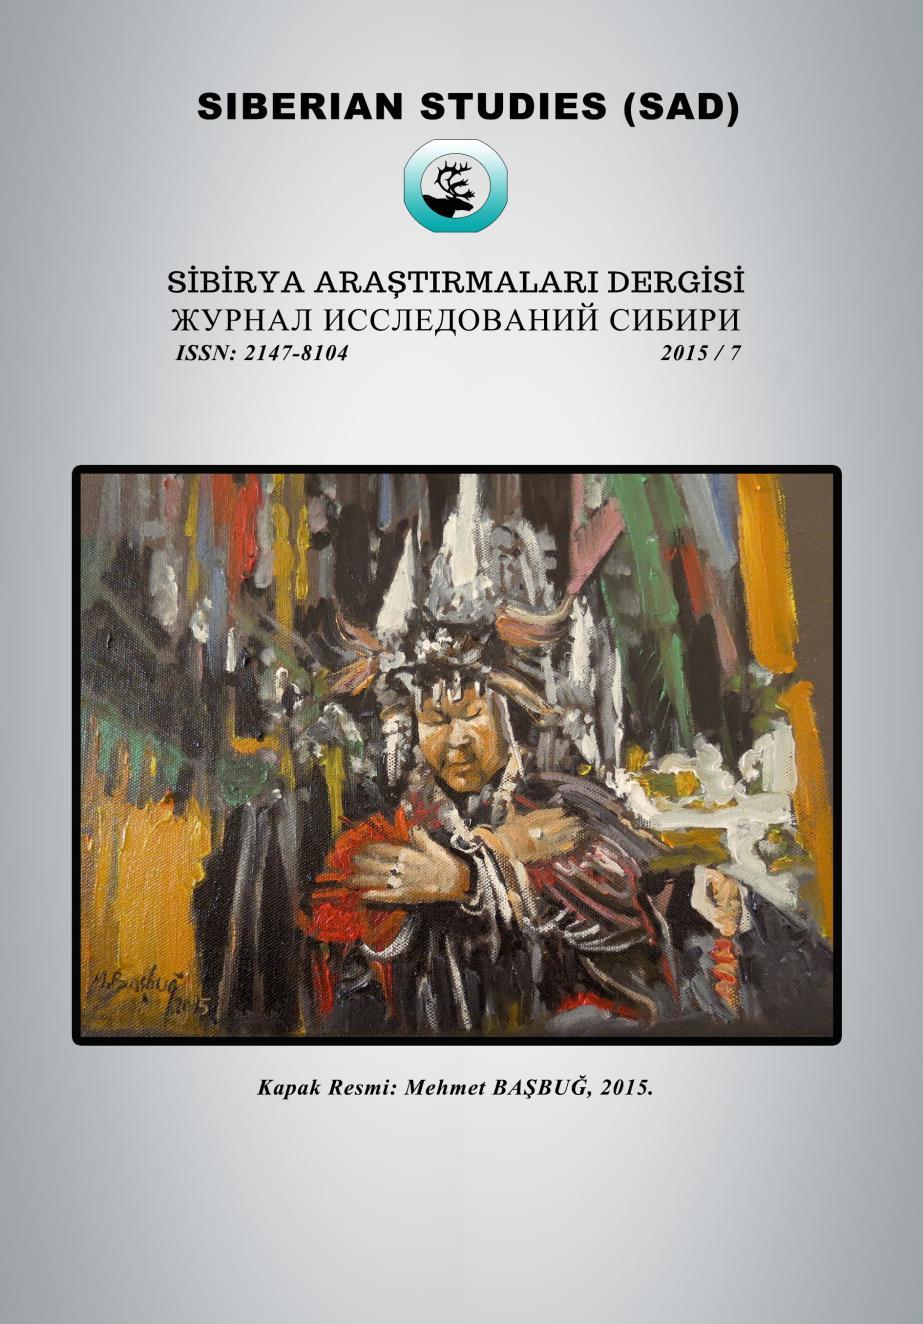 KAPAK RESMİ / COVER: Prof.